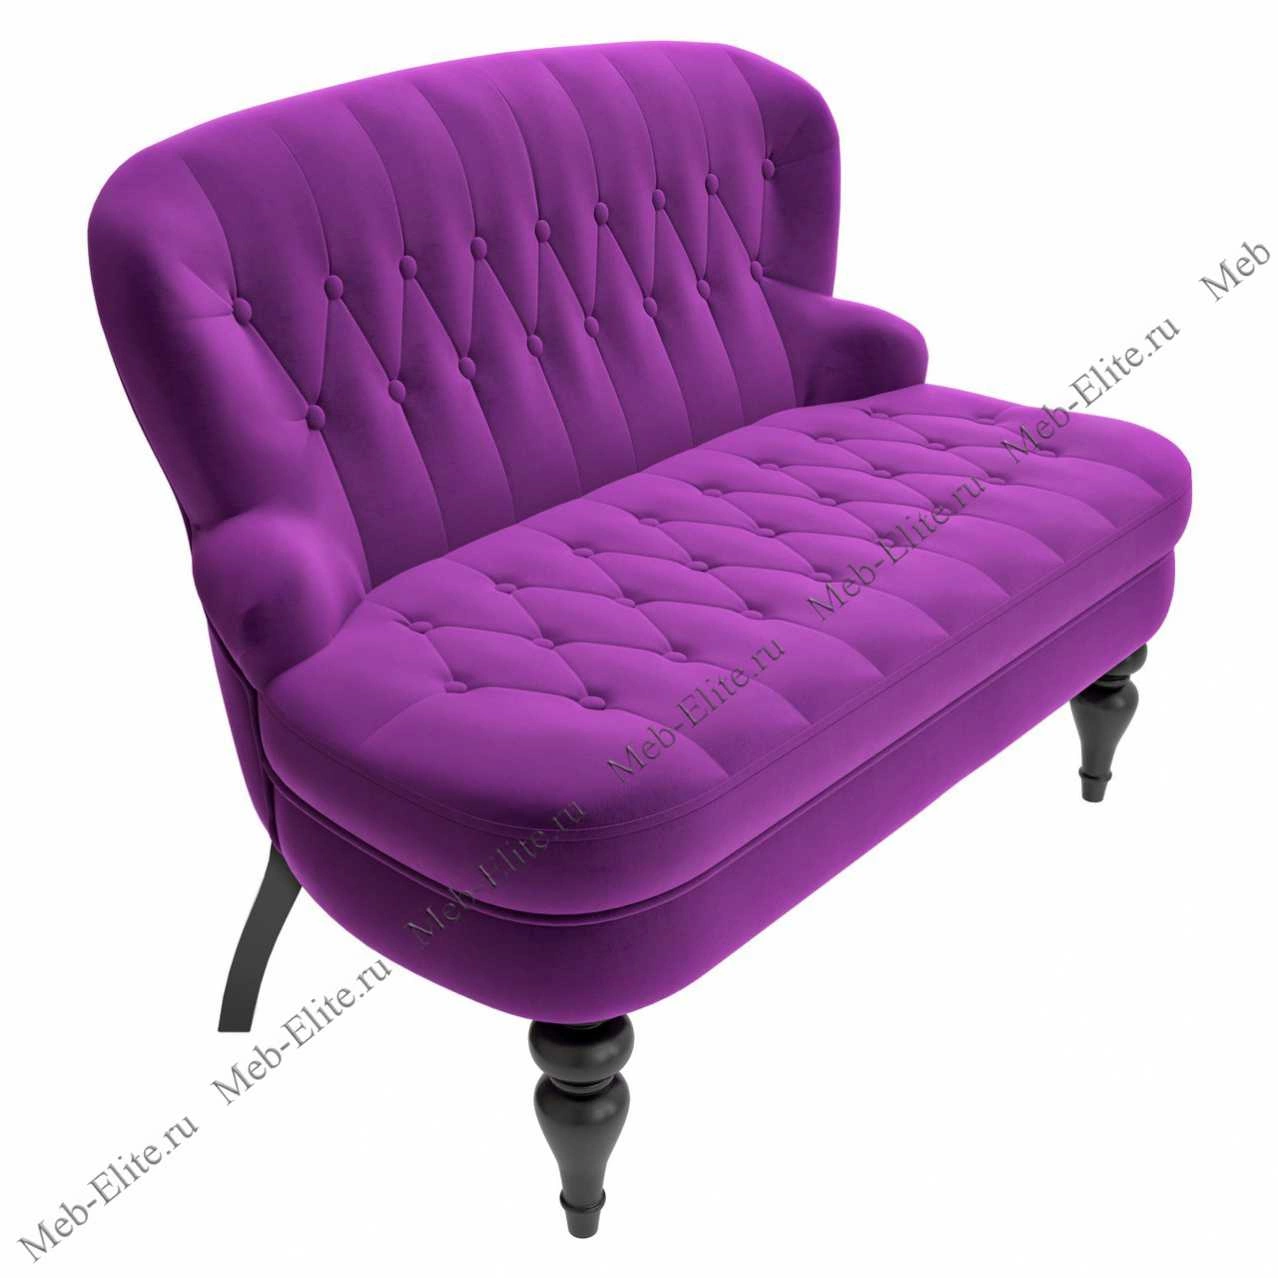 Преимущества фиолетового дивана